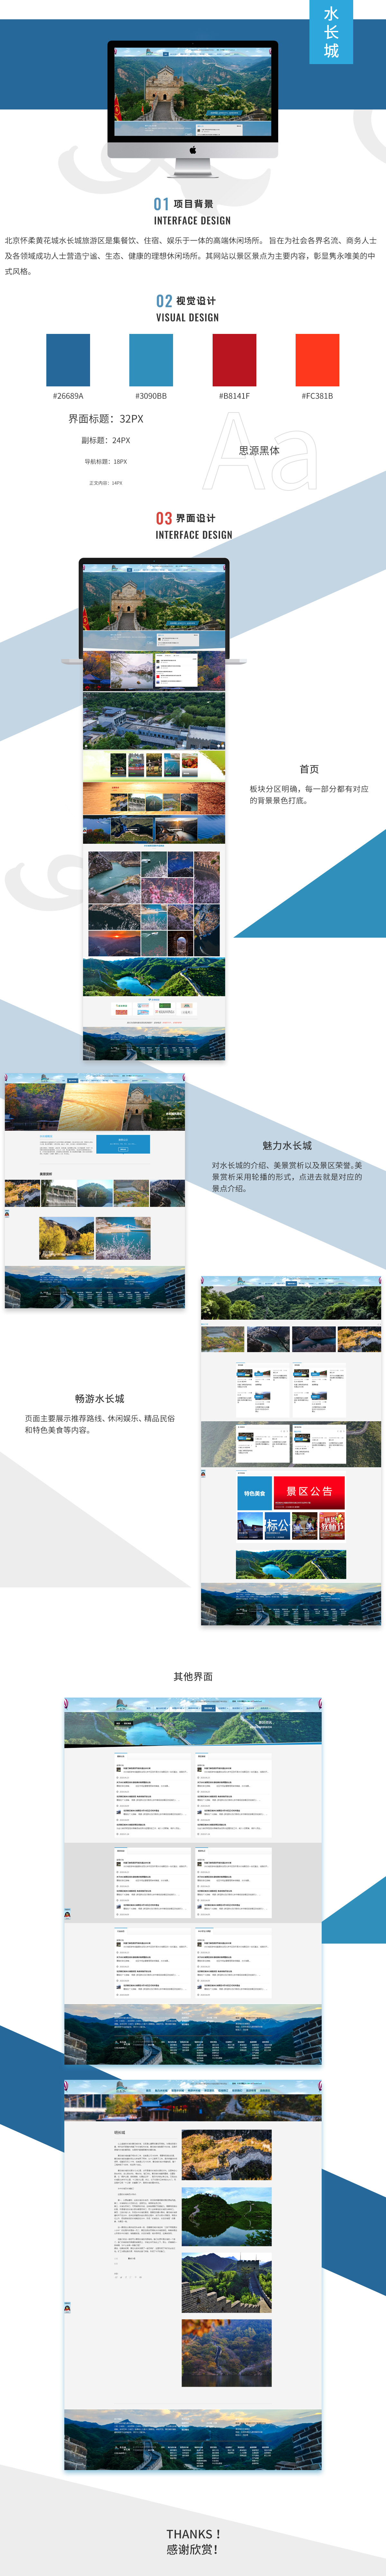 北京黄花城长城旅游开发有限责任公司品牌网站案例